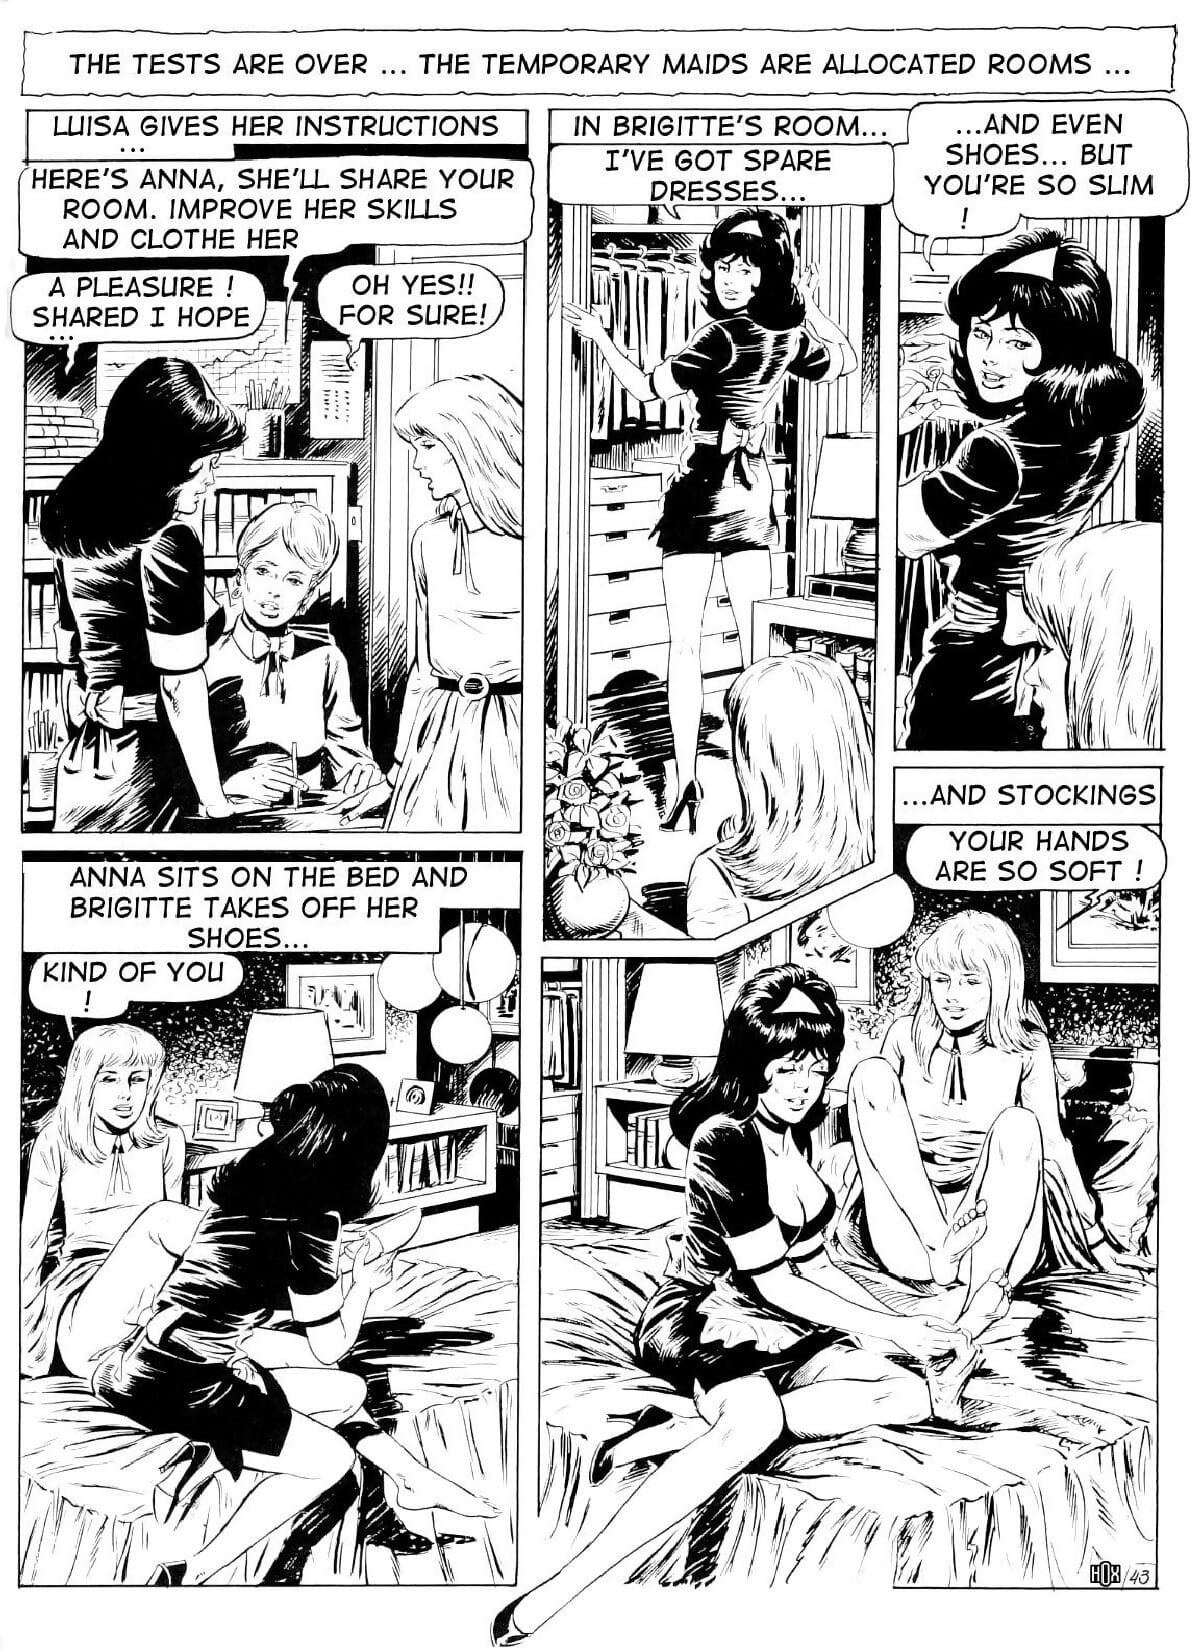 Brigitte De Luxe Maid #2 - part 2 page 1